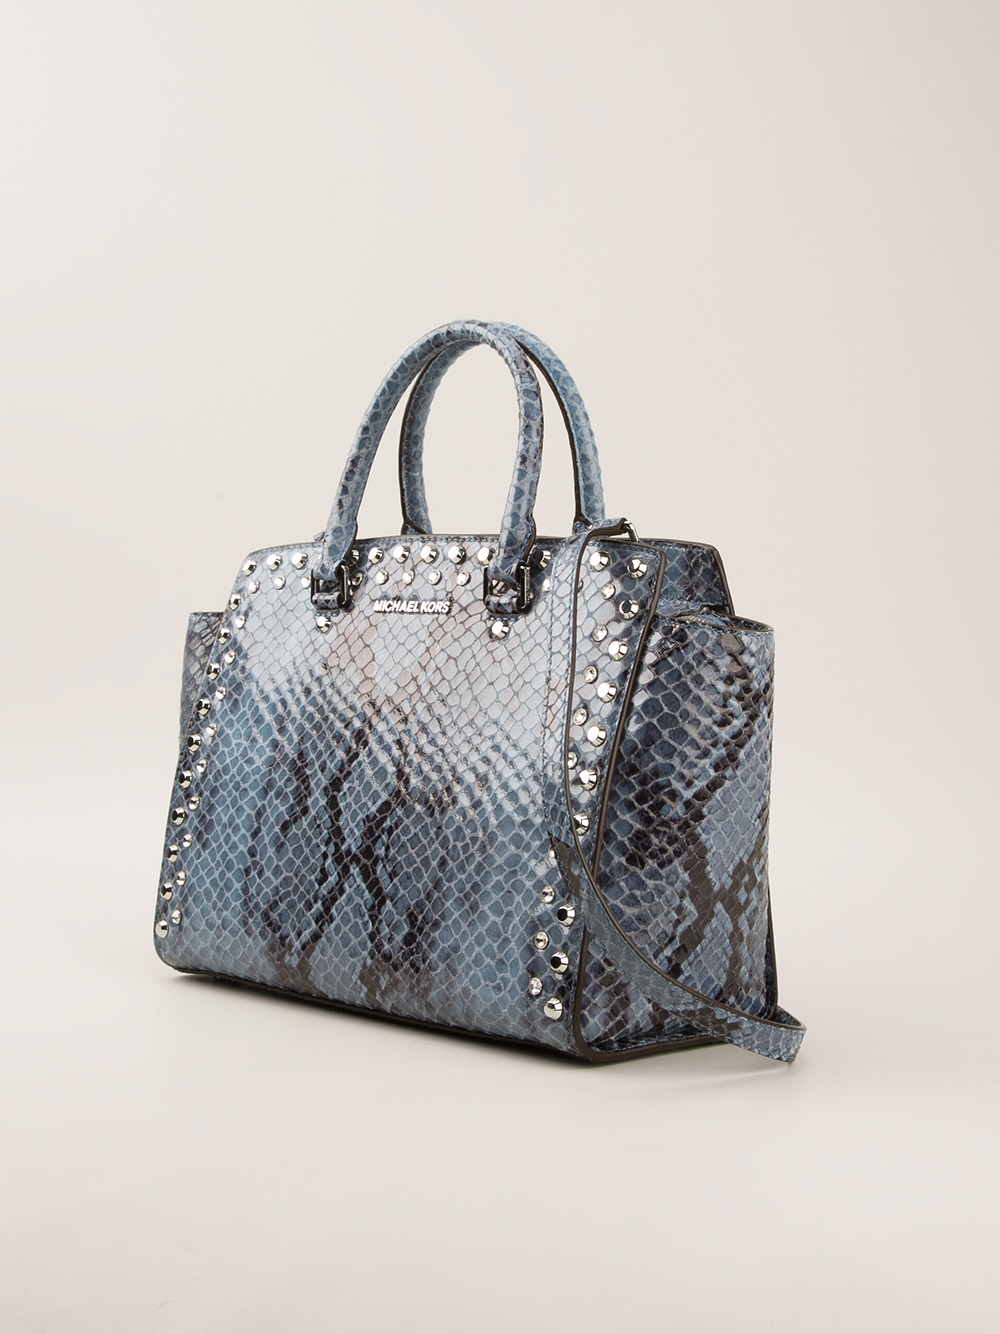 Michael Kors - Red & Black Snakeskin Print Handbag – Current Boutique